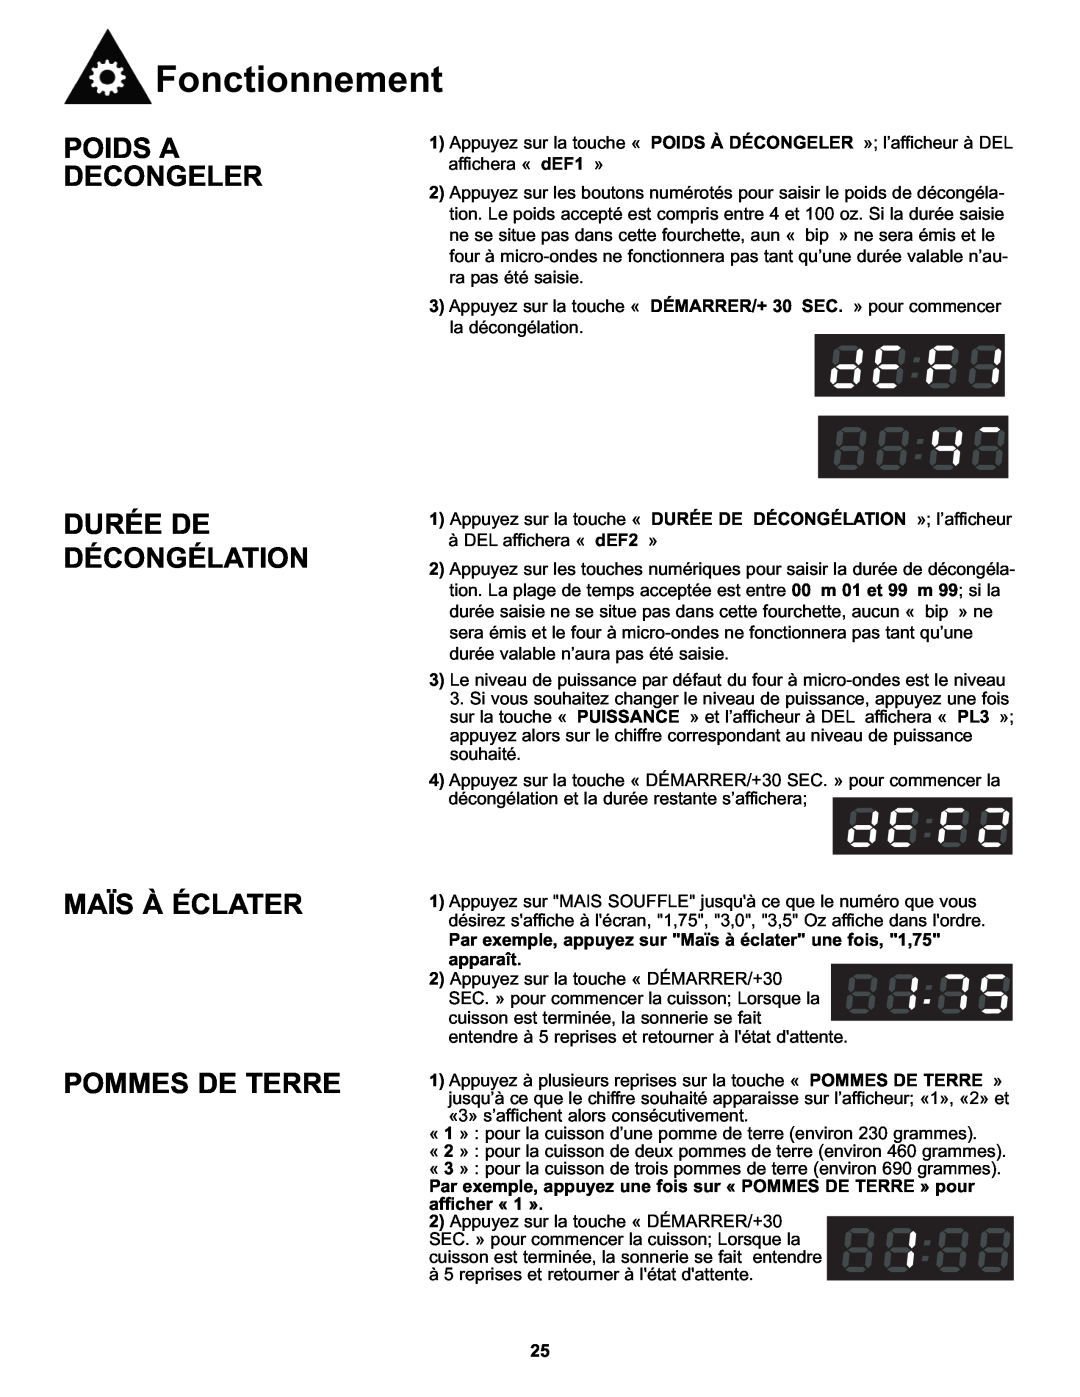 Danby DMW111KWDB manual Poids A Decongeler Durée De Décongélation, Maïs À Éclater Pommes De Terre, Fonctionnement 